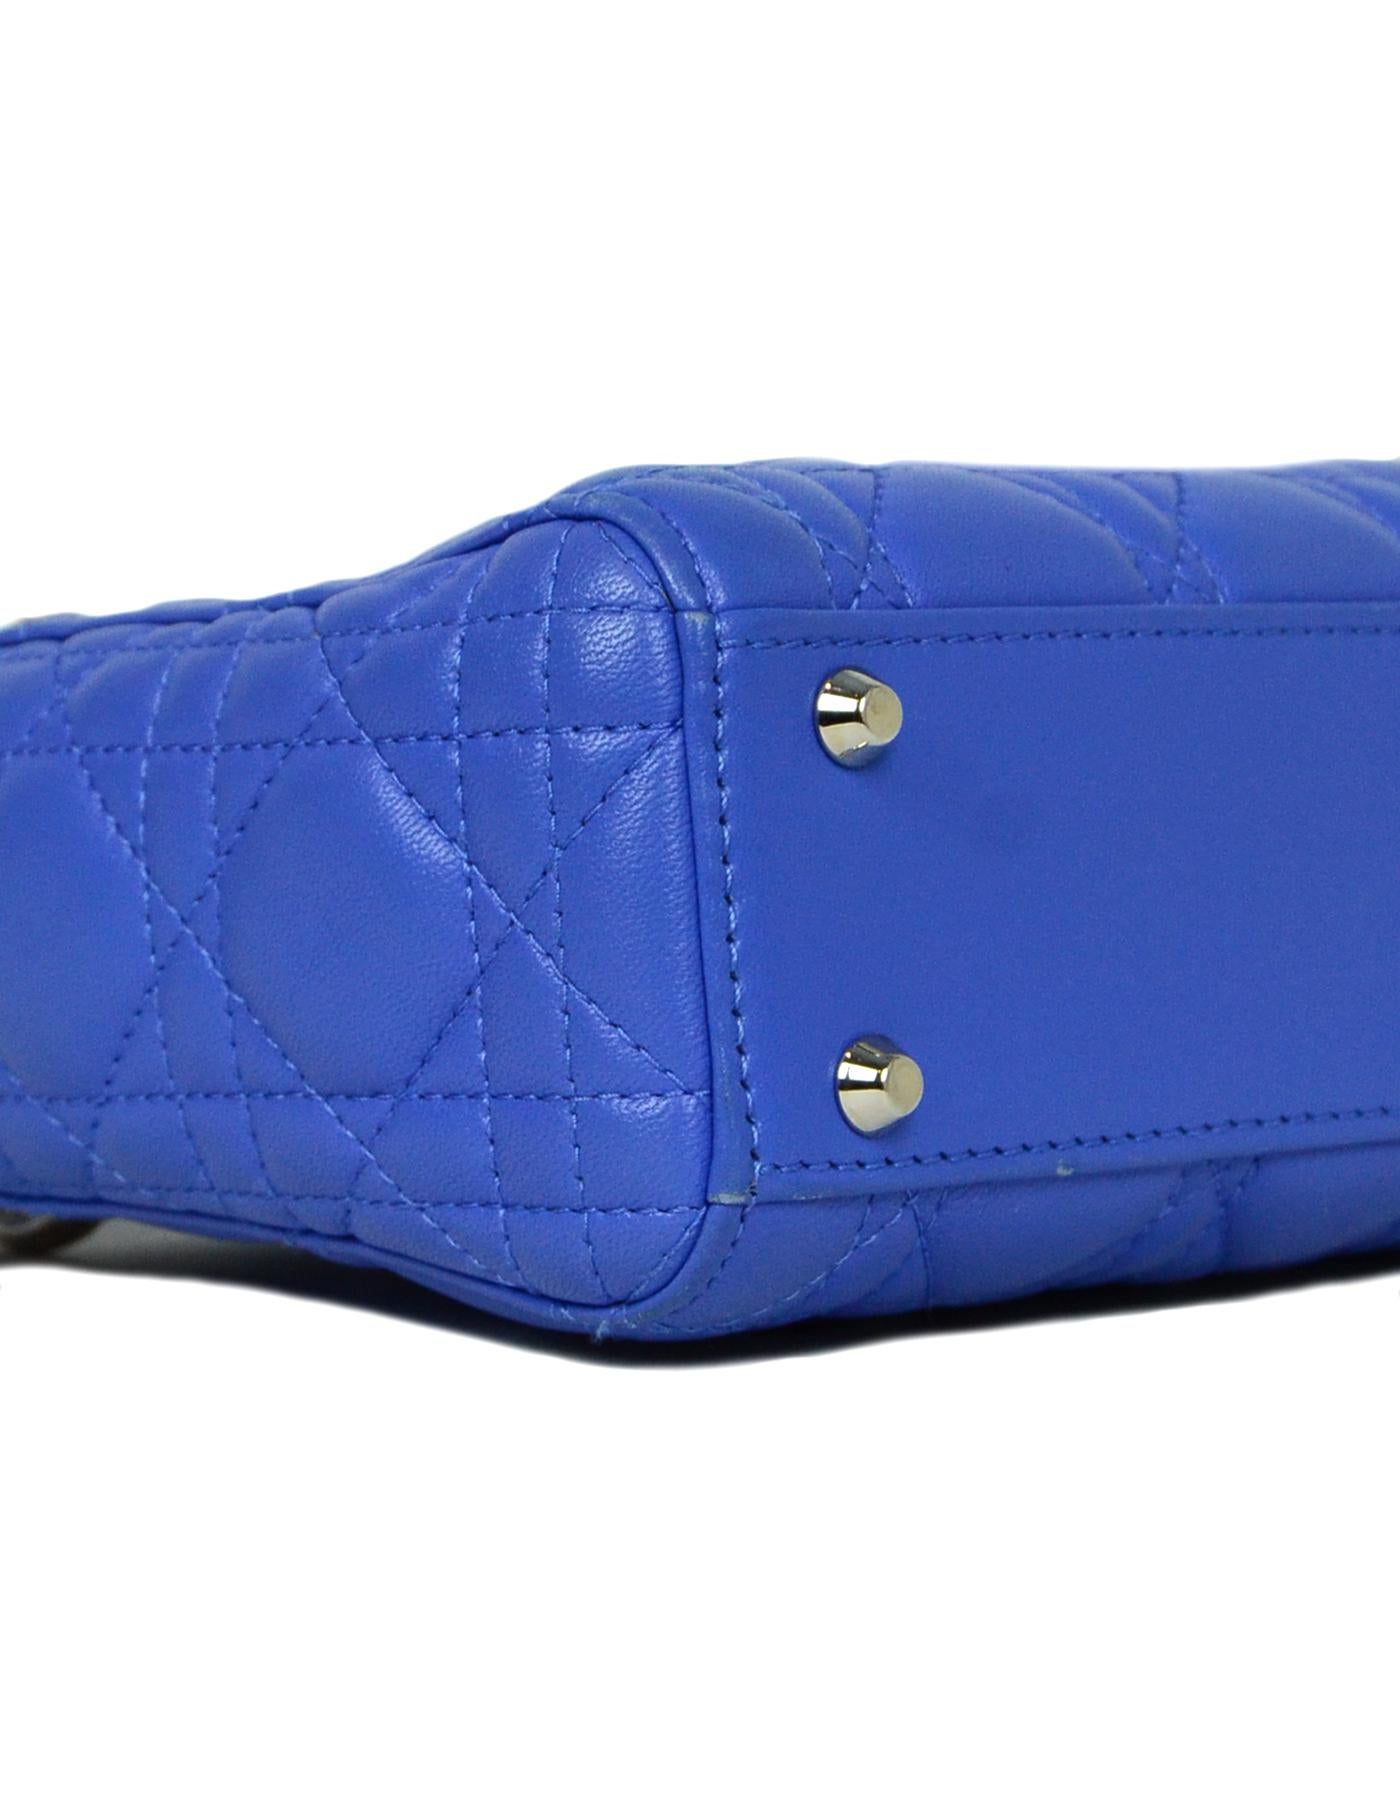 dior crossbody bag blue